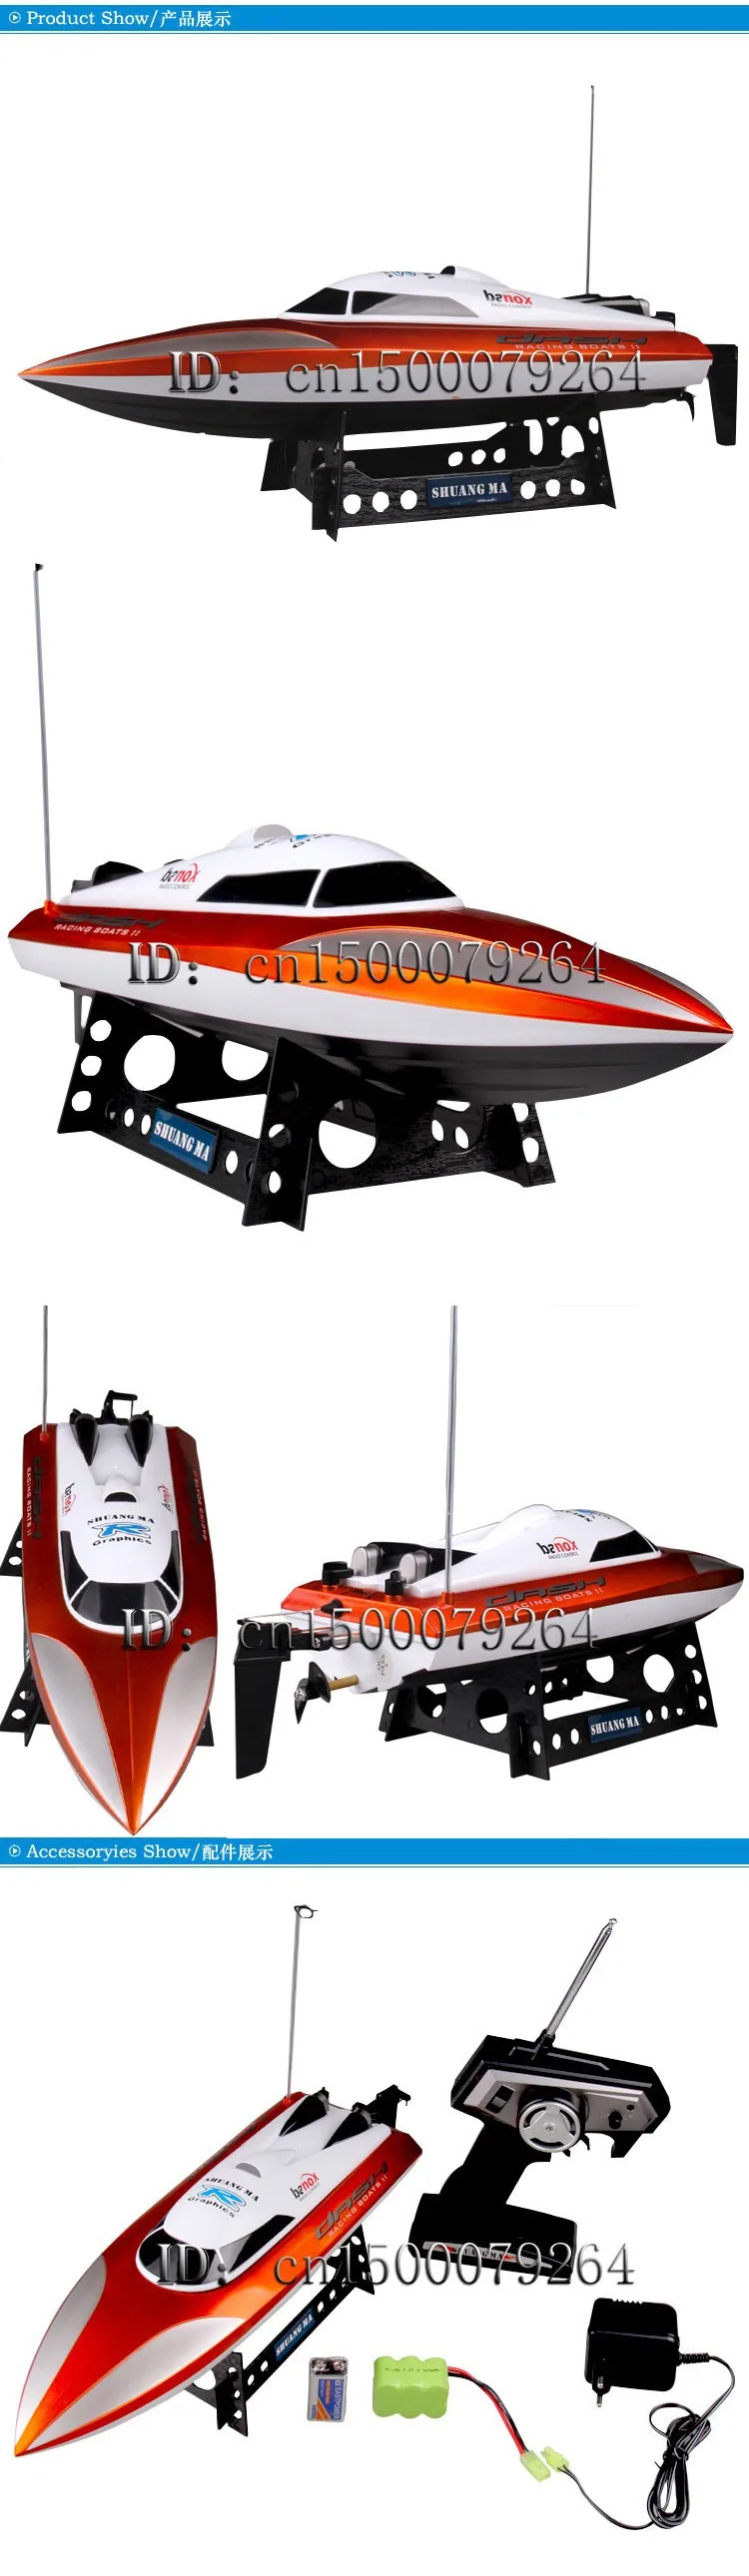 Shuang mA 4CH 2,4G DH7010 RC лодка с высокоскоростным мотором 46 см дистанционное управление Скорость лодки корабль летняя игрушка подарок для детей